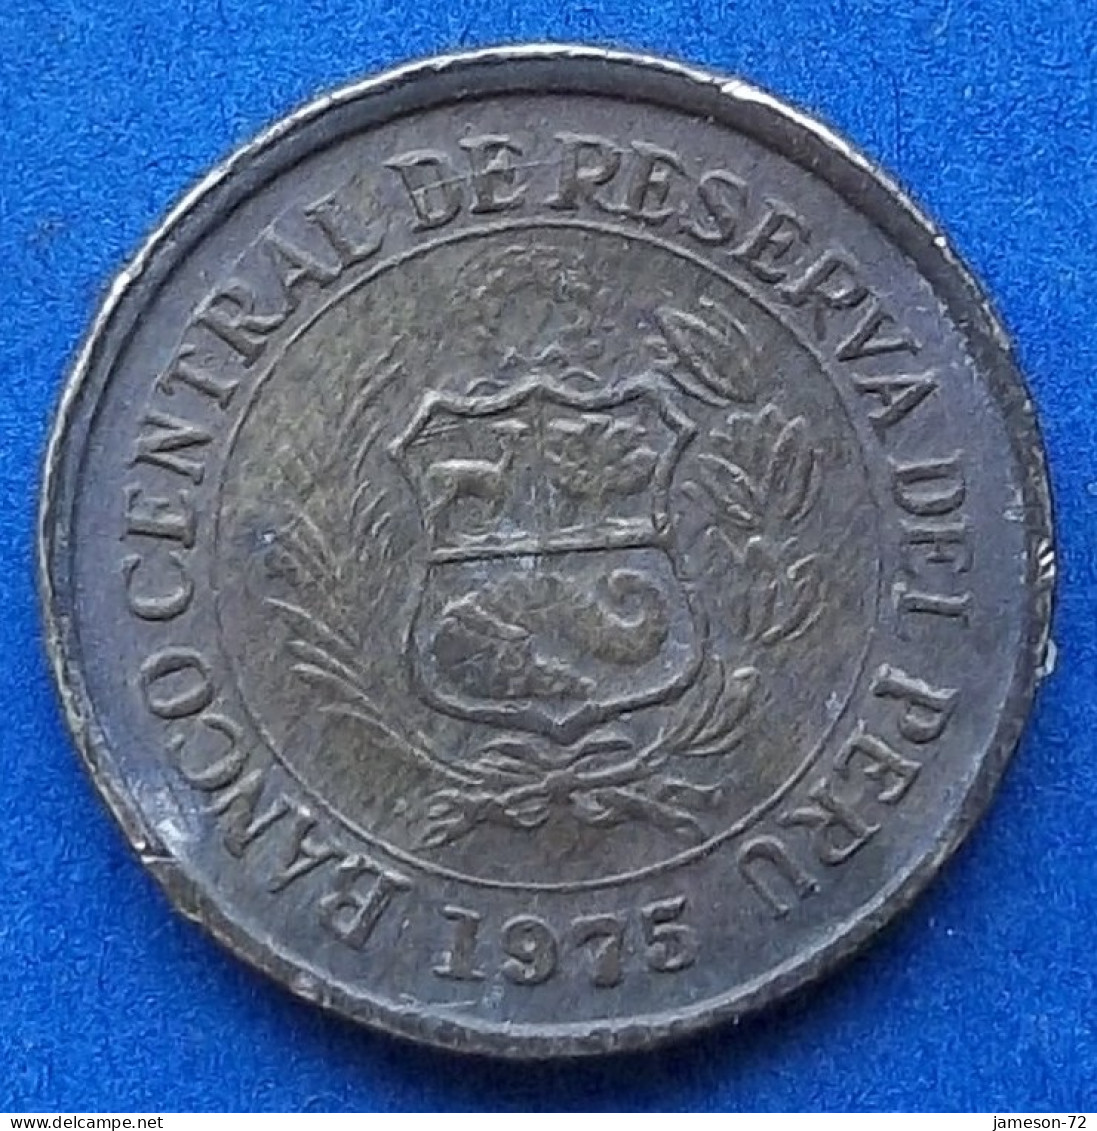 PERU - 10 Centavos 1975 KM# 263 Decimal Coinage (1893-1986) - Edelweiss Coins - Peru